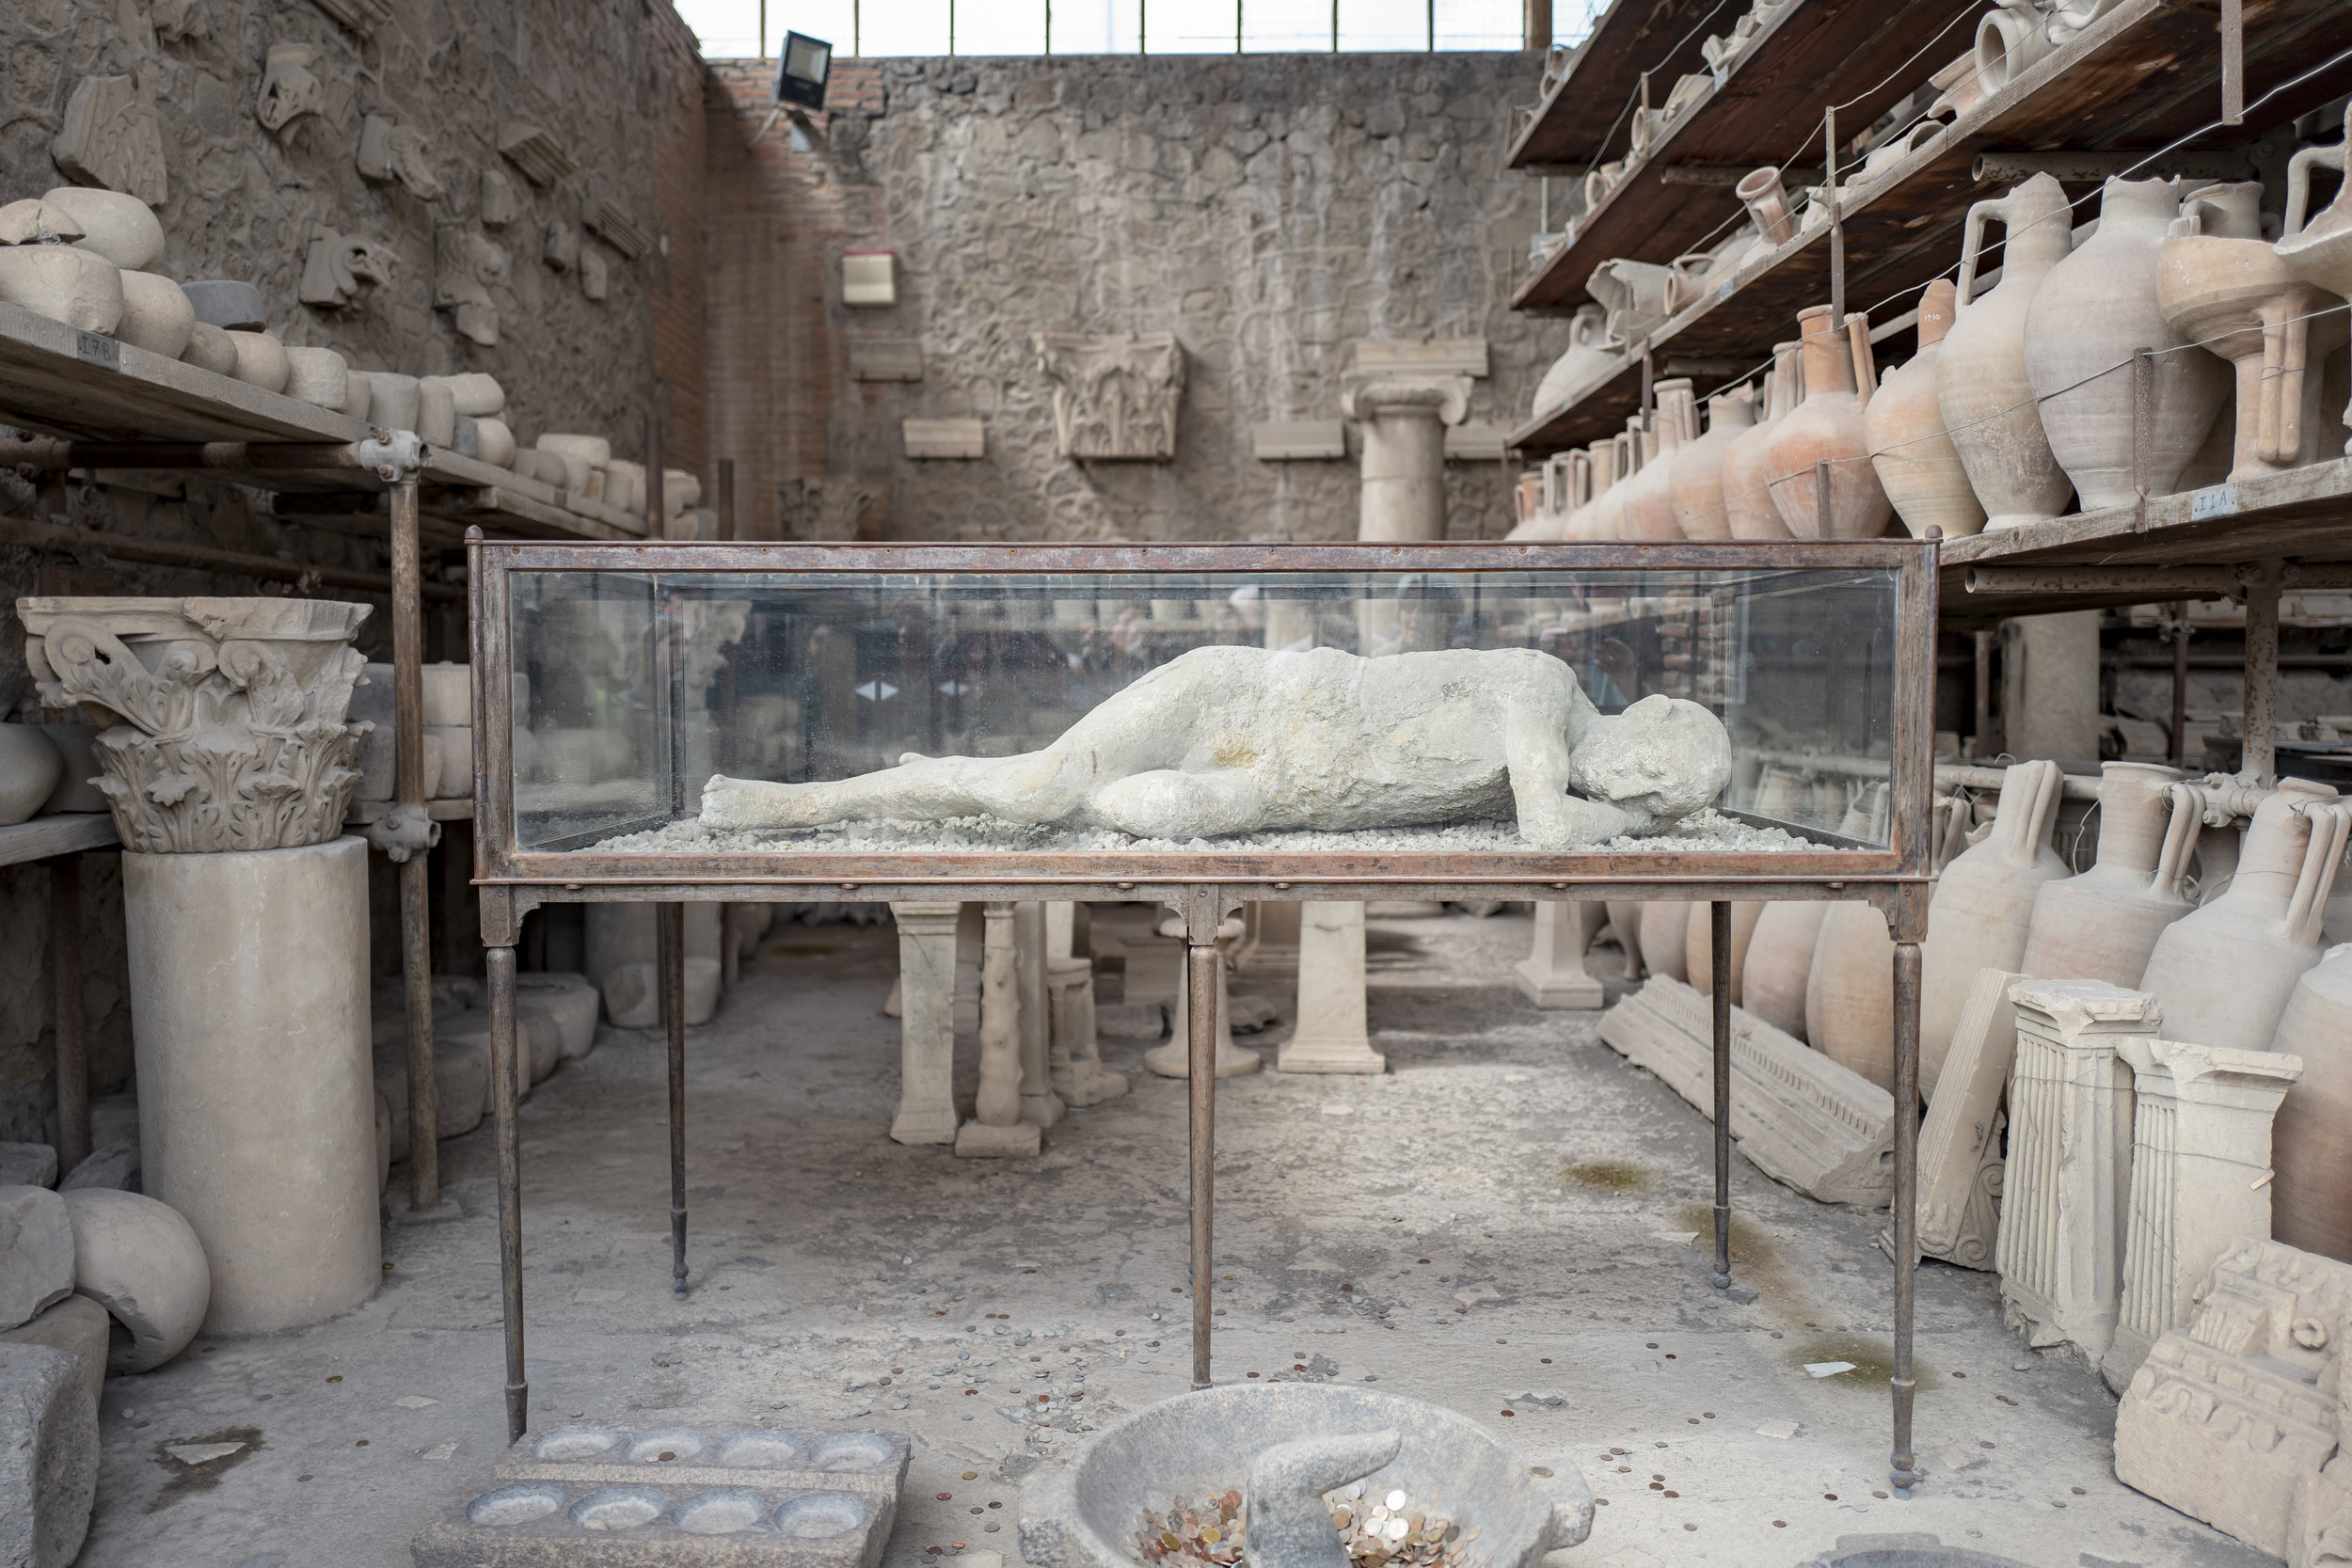 PompeiiVesuvius-177.jpg